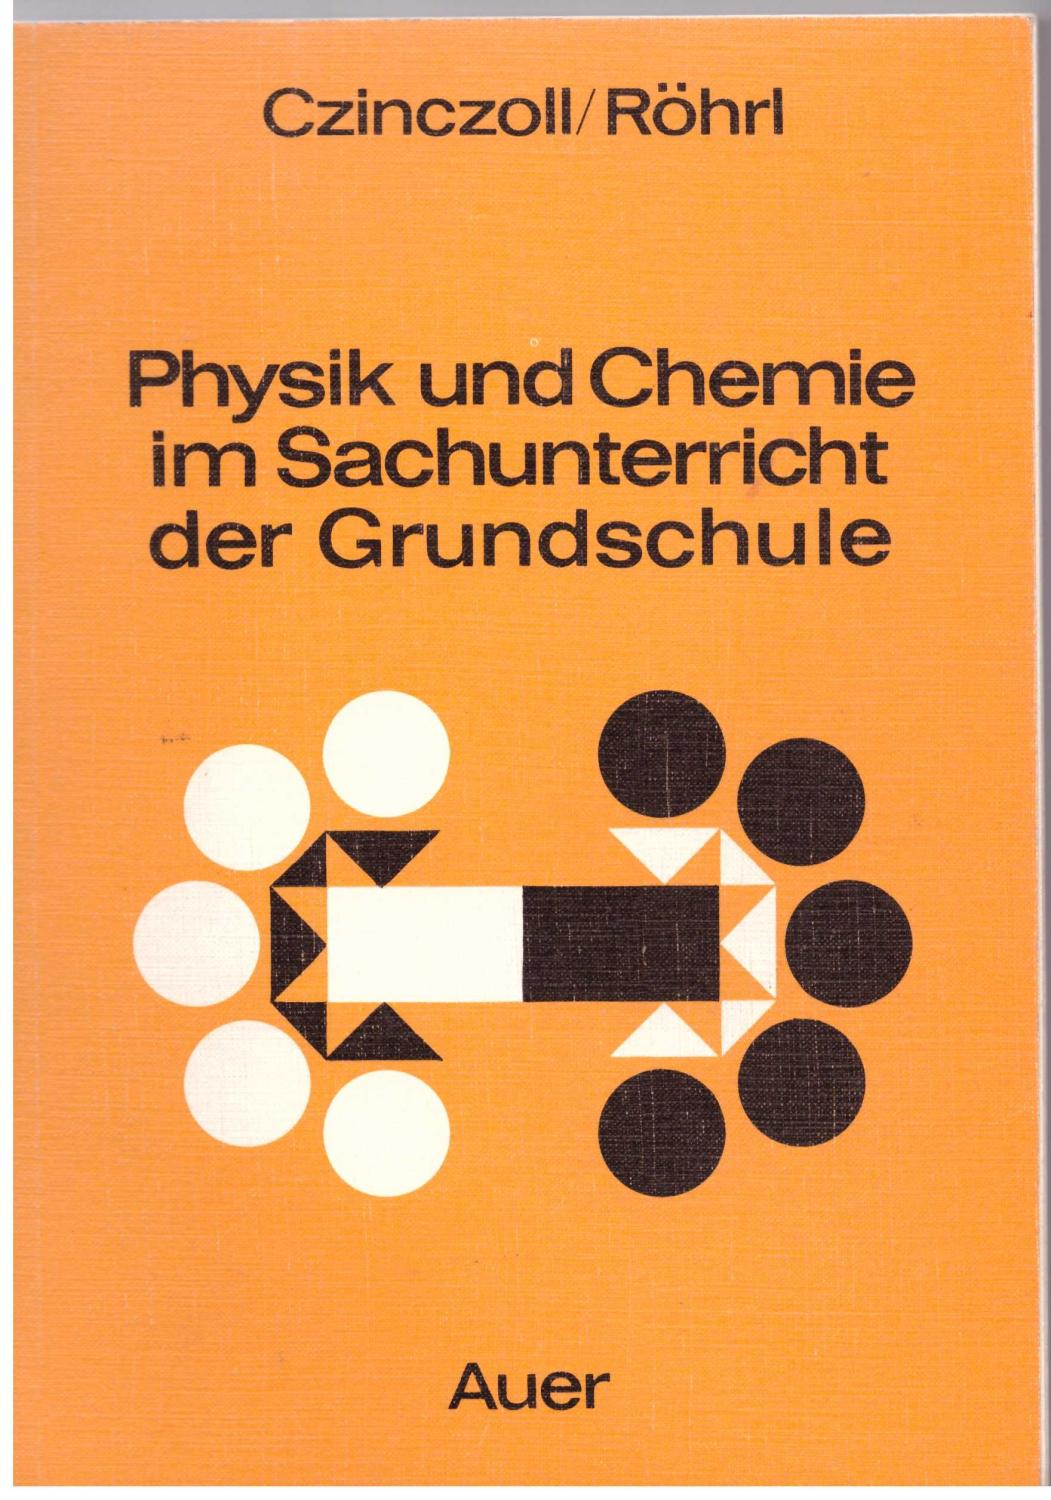 Physik und Chemie im Sachunterricht der Grundschule. Unterrichtspraktische Hilfen und Vorschläge - Cziczoll / Röhrl